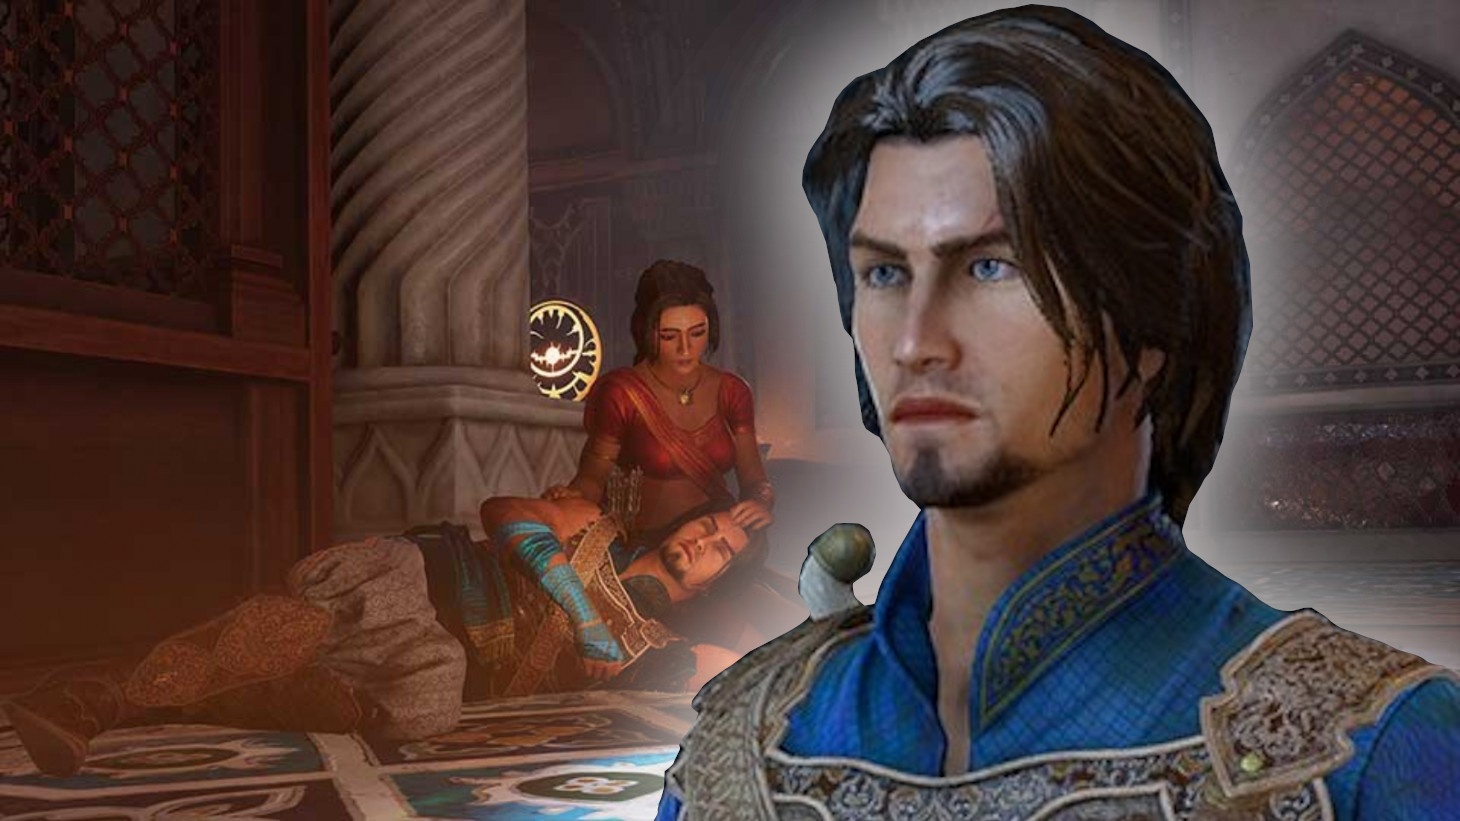 #Prince of Persia Remake: Fast drei Jahre nach der Ankündigung könnte es kaum schlechtere Neuigkeiten geben